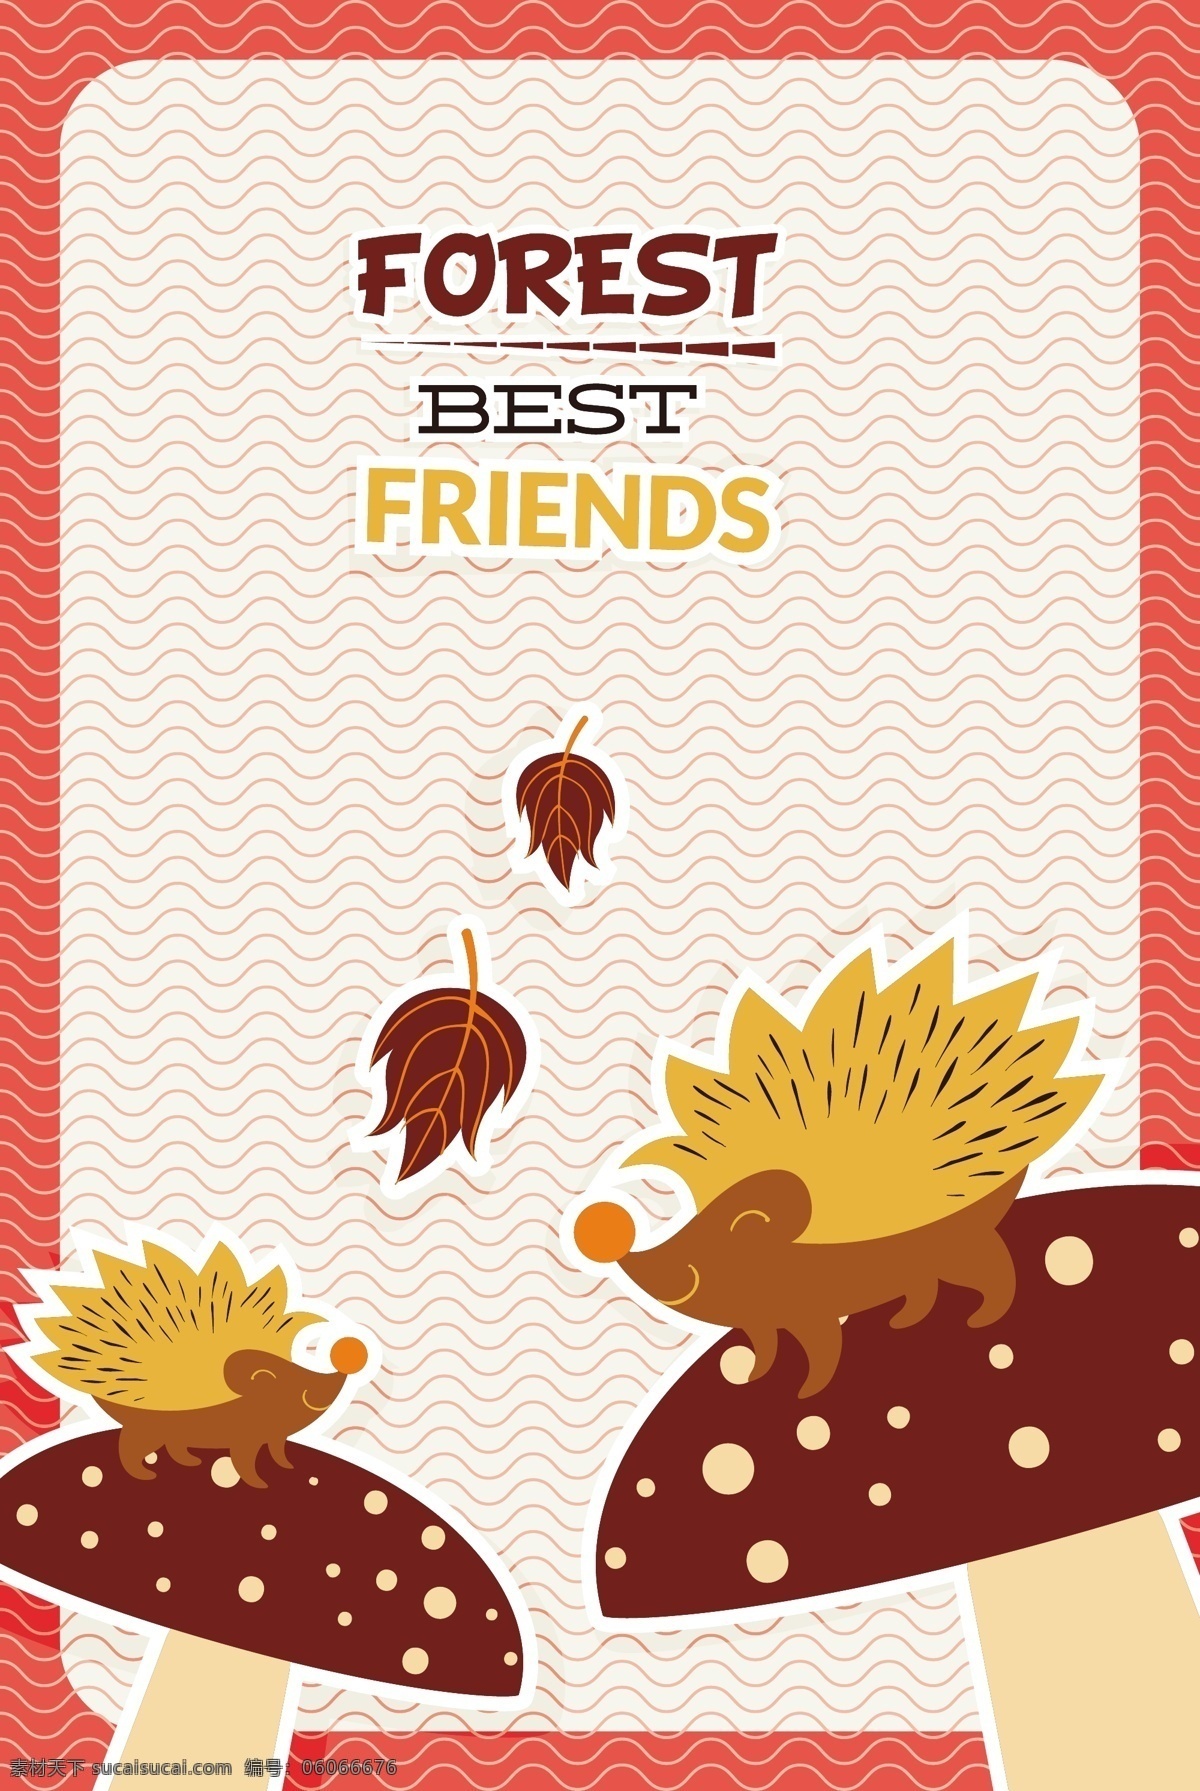 可爱 刺猬 动物 背景 矢量 秋天 树叶 背景素材 创意设计 广告背景 掉了 贺卡背景